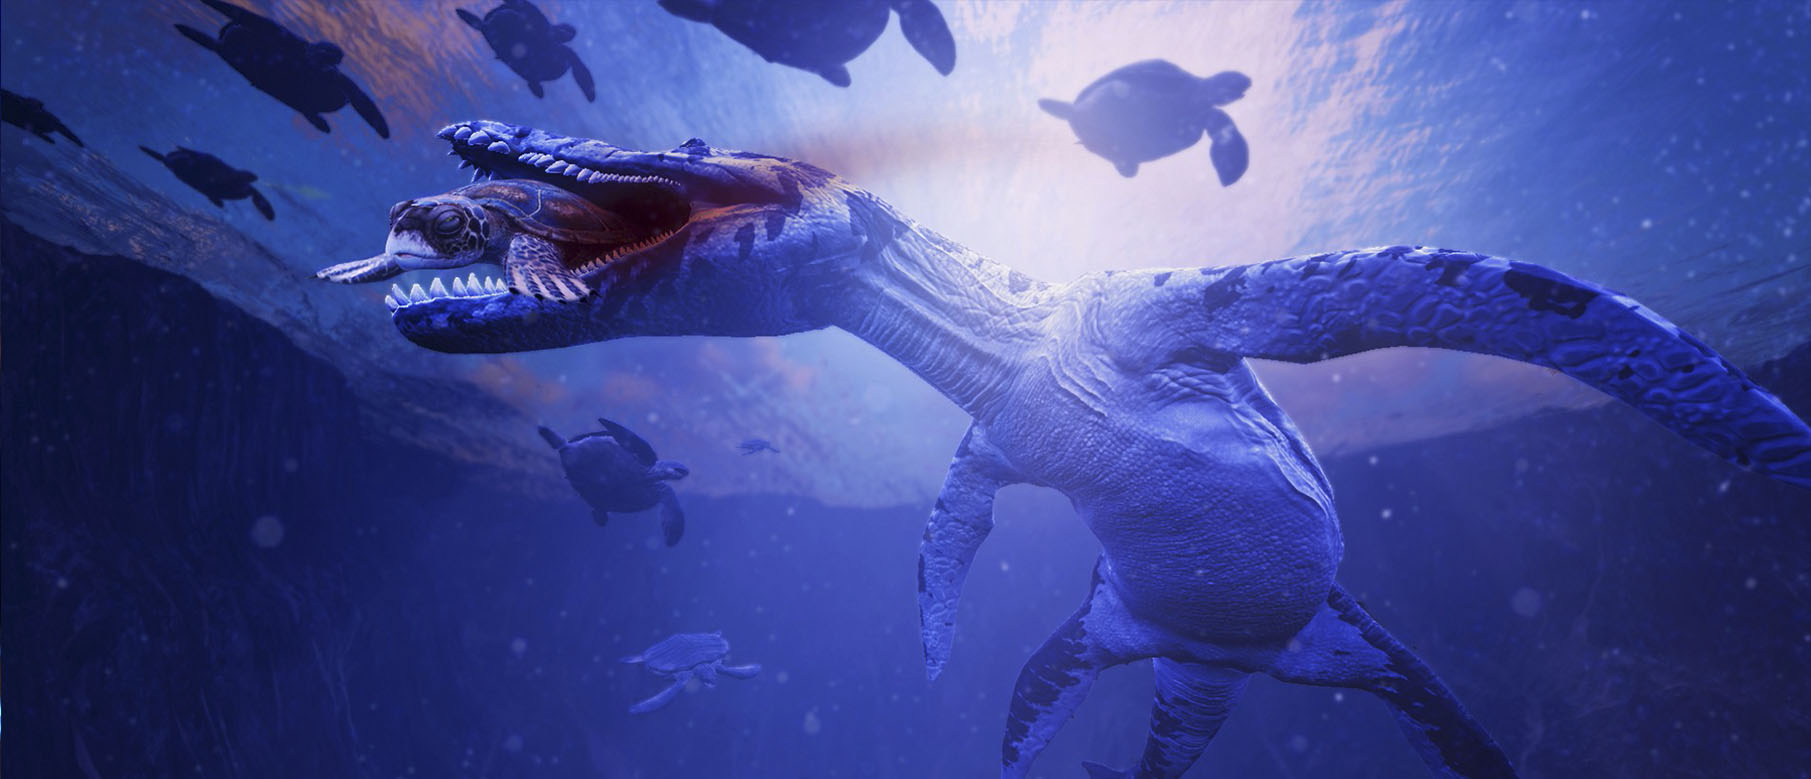 Изображение к Релизный трейлер Time Machine VR, динозавры, дополненная реальность и временные парадоксы